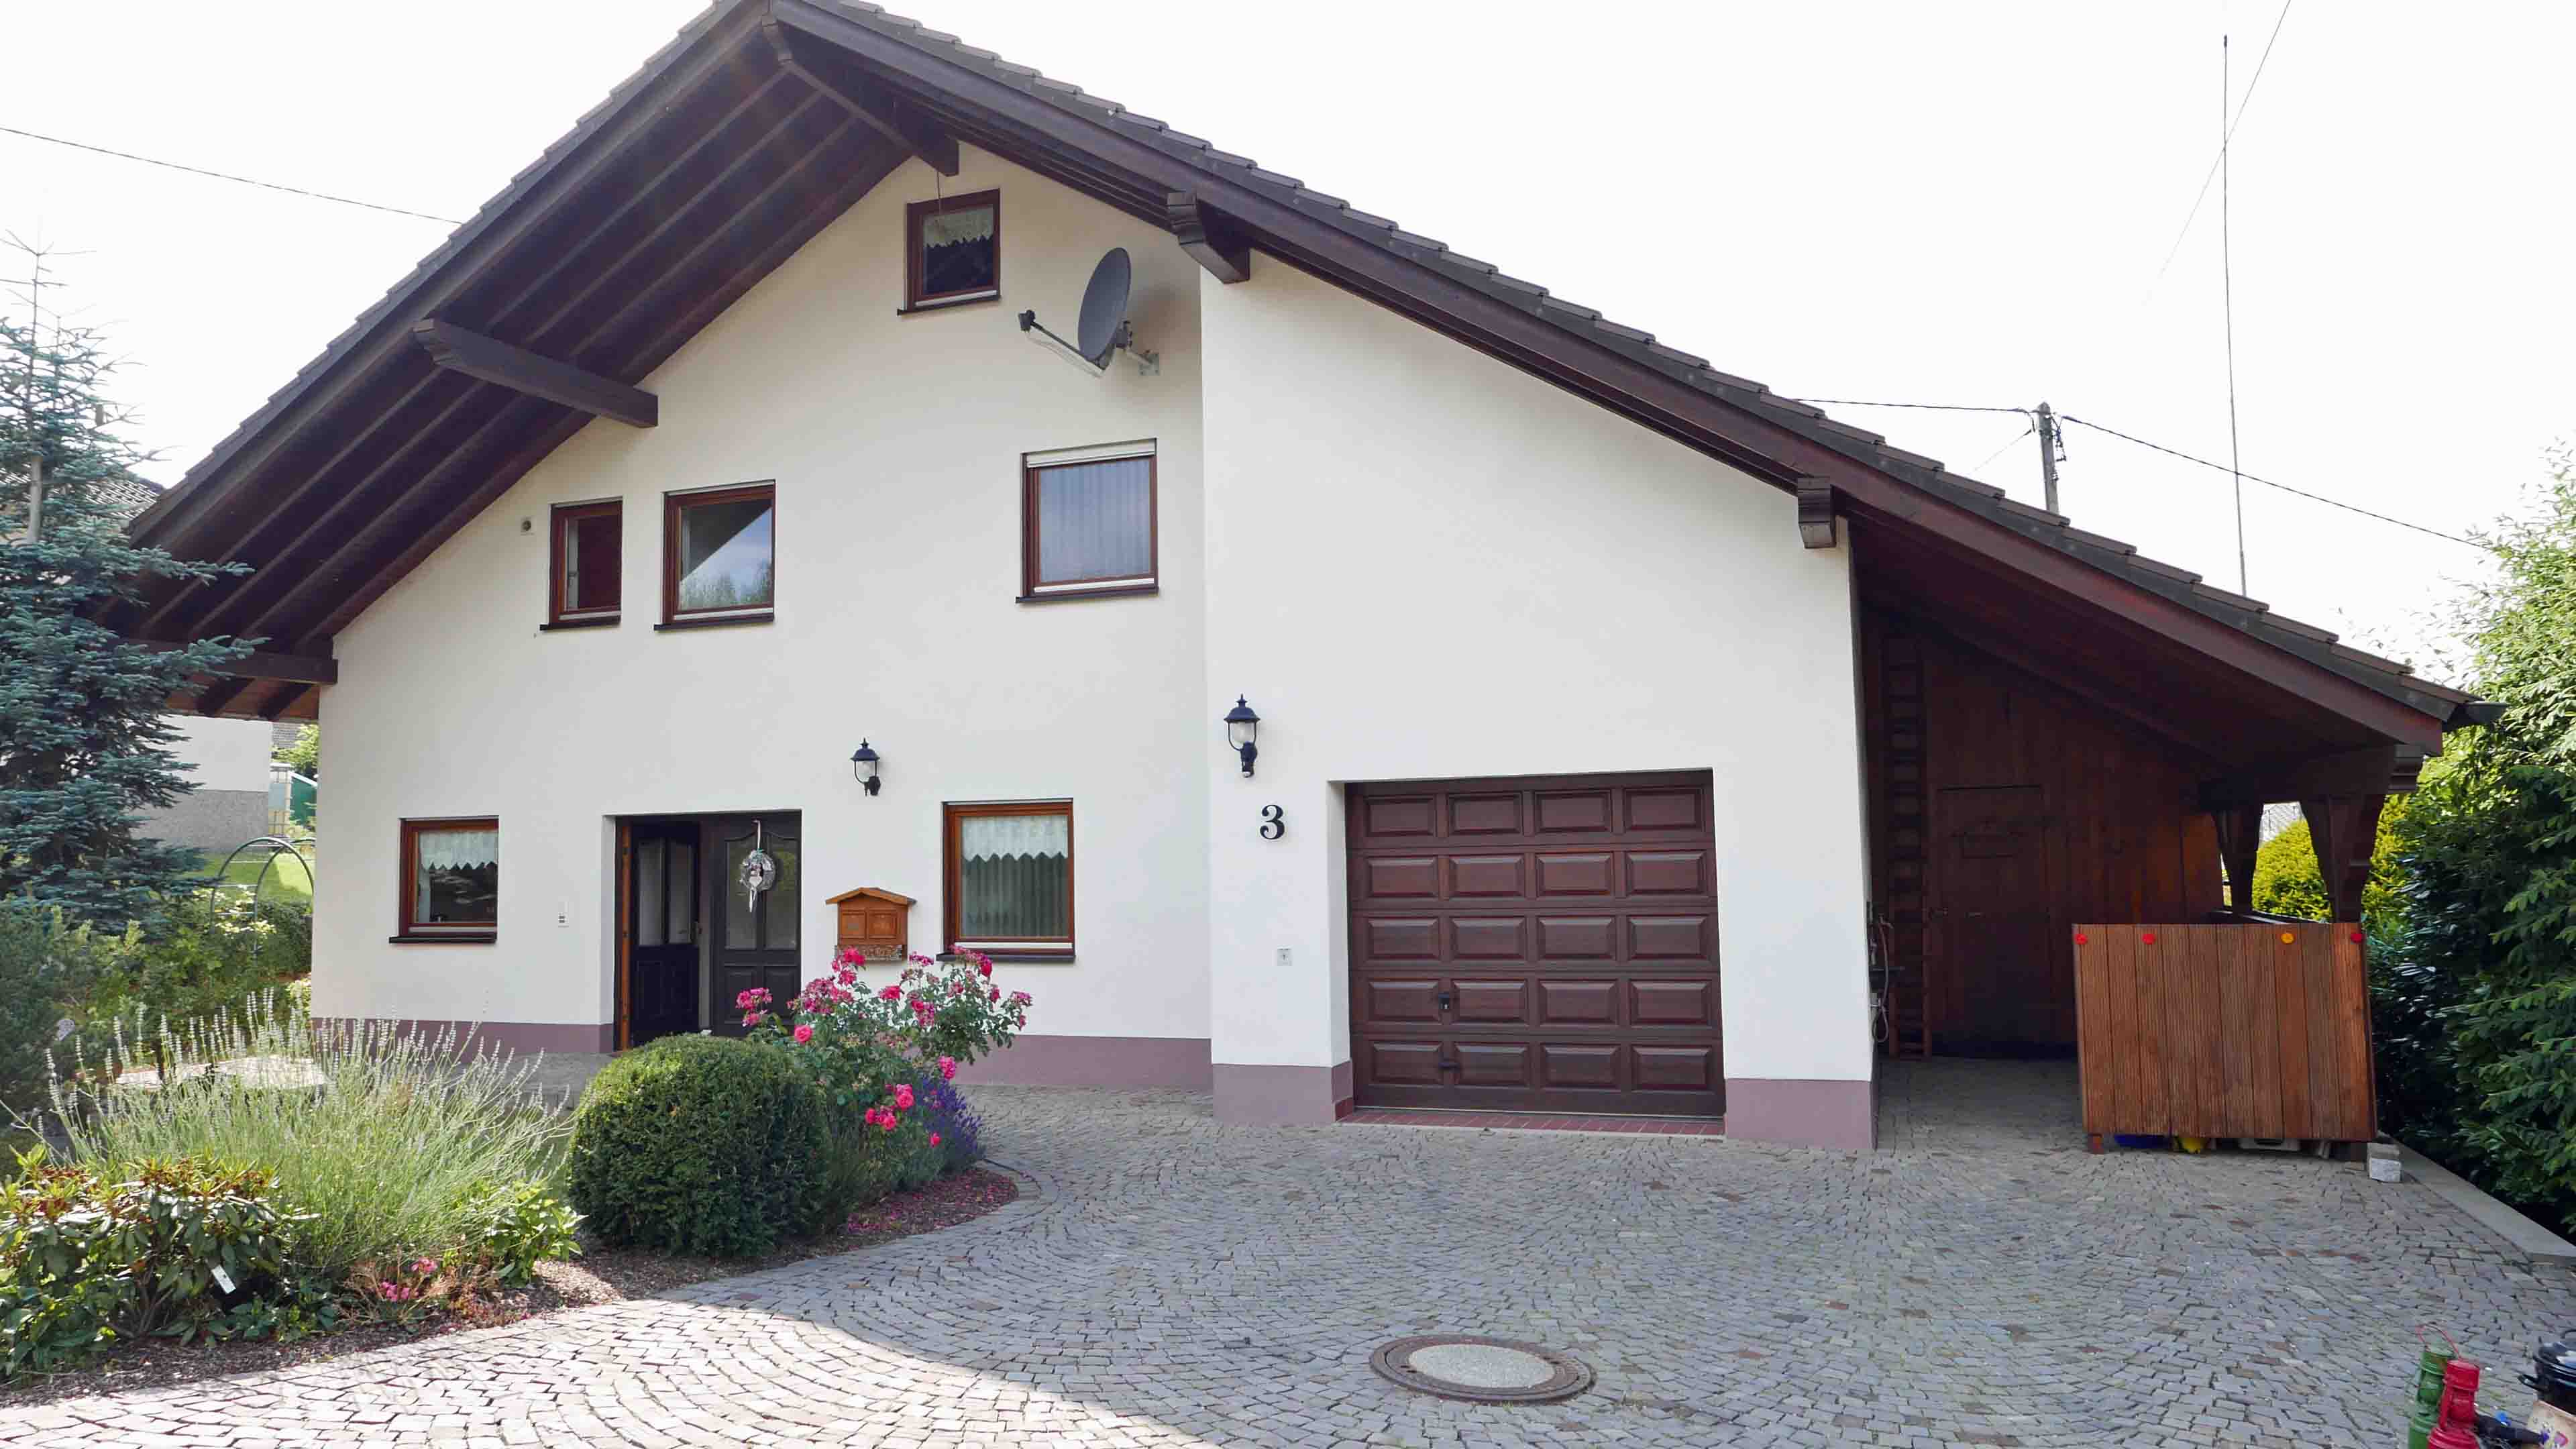 Reichshof-Wildberg: Ein Landhaus für die Familie im "Kinderdorf" Wildberg  , Vorderseite mit Garage und Carport